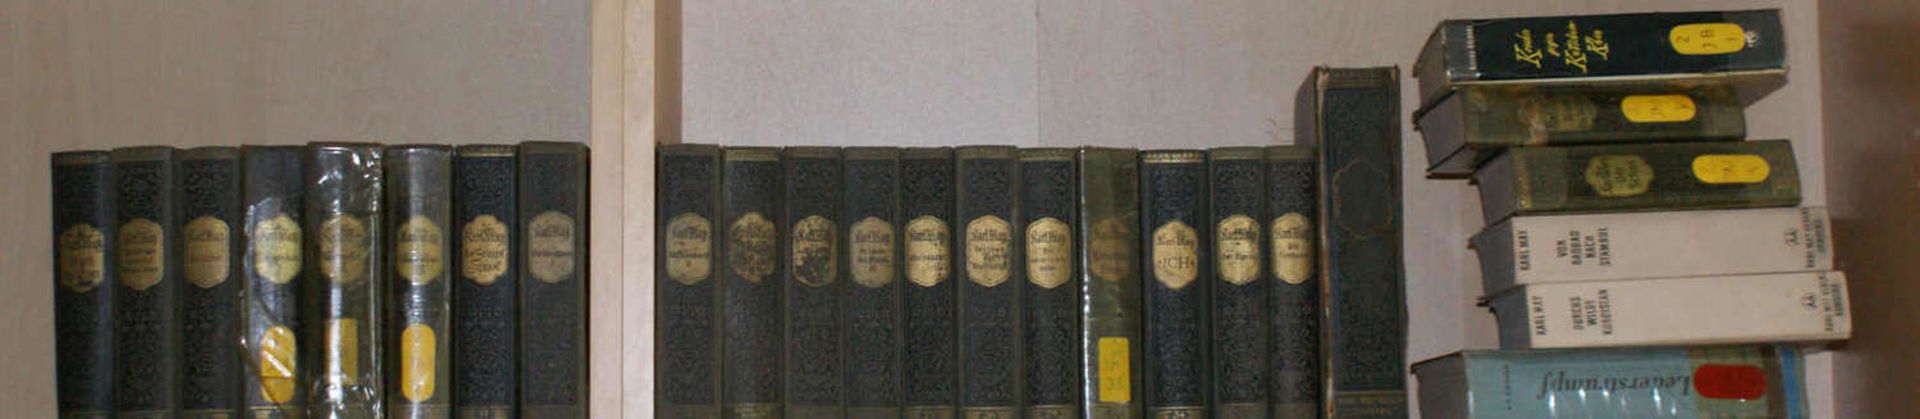 Lot Karl May Bücher, ca. 50er Jahre, verschiedene Ausgaben, nicht komplett, 24 Stück, sowie "